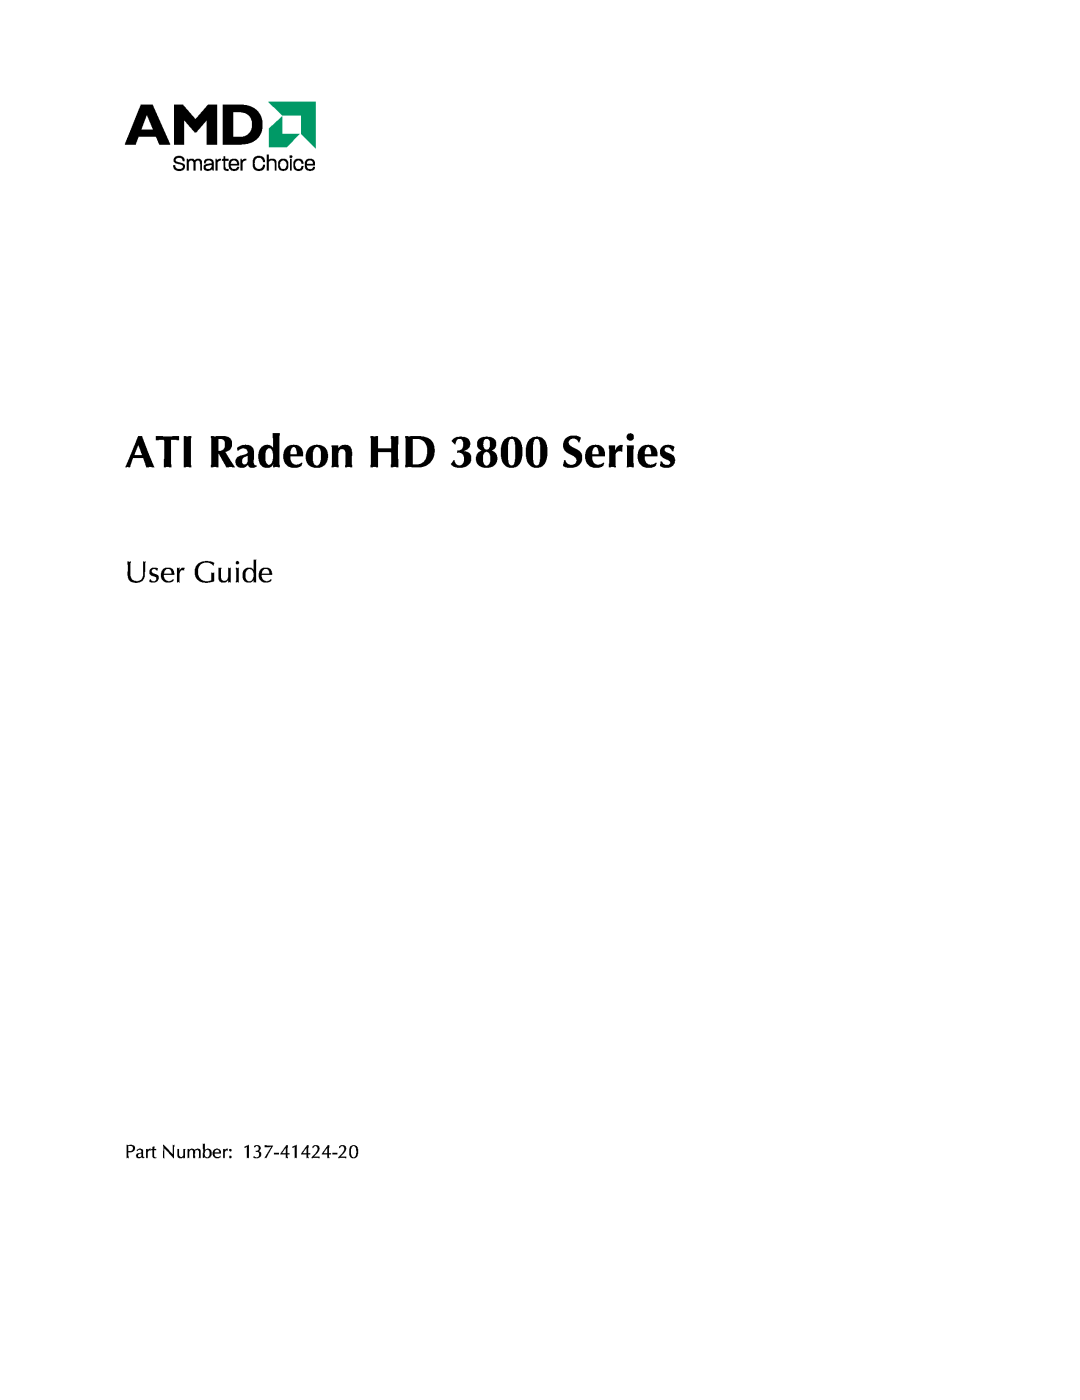 AMD manual ATI Radeon HD 3800 Series, User Guide 